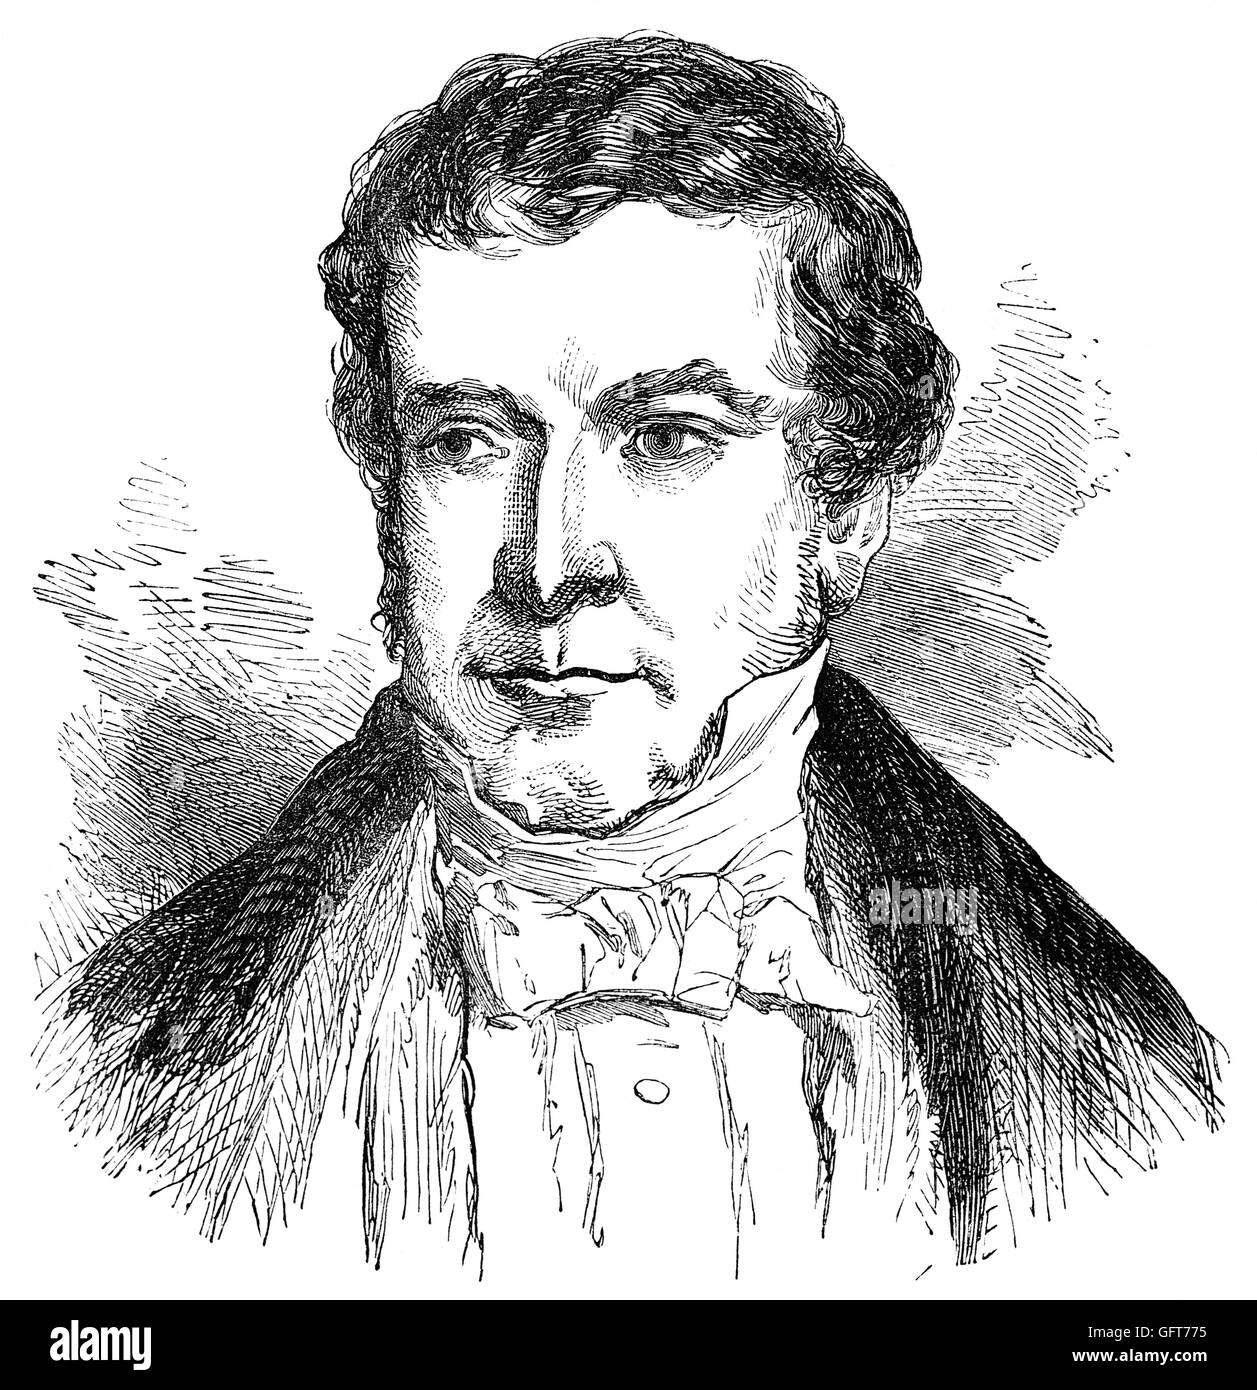 Thomas Denman, primo Baron Denman, (1779 - 1854) era un giurista britannica, giudice e politico di cui la maggior parte della brillante aspetto giuridico era come uno dei consigli per la regina Carolina. più tardi diventò un membro del Parlamento e ha preso il suo posto con l'opposizione Whig. Foto Stock